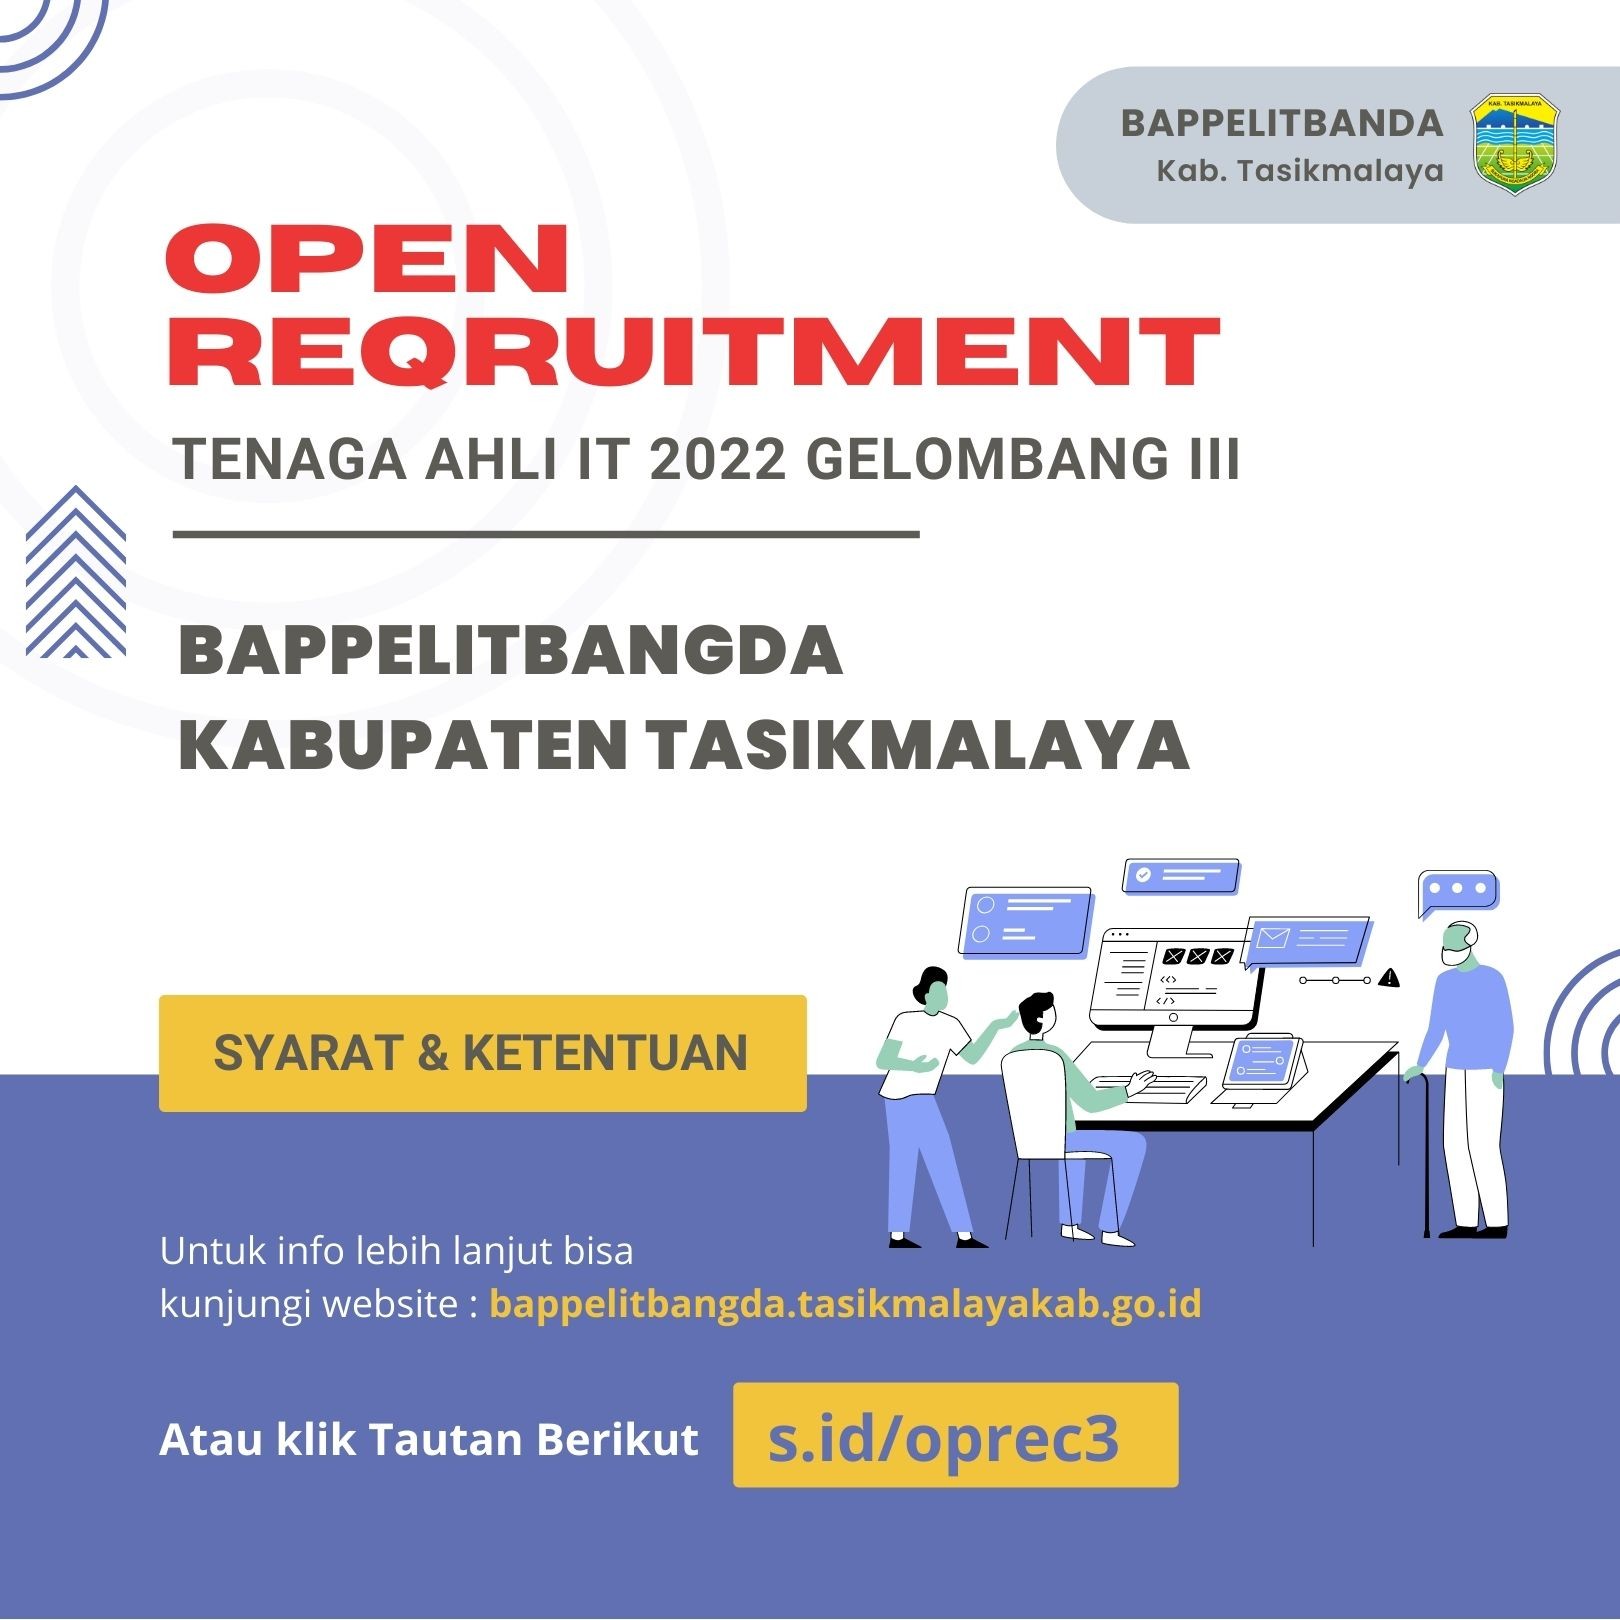 White_Blue_Modern_Recruitment_Instagram_Post.jpg